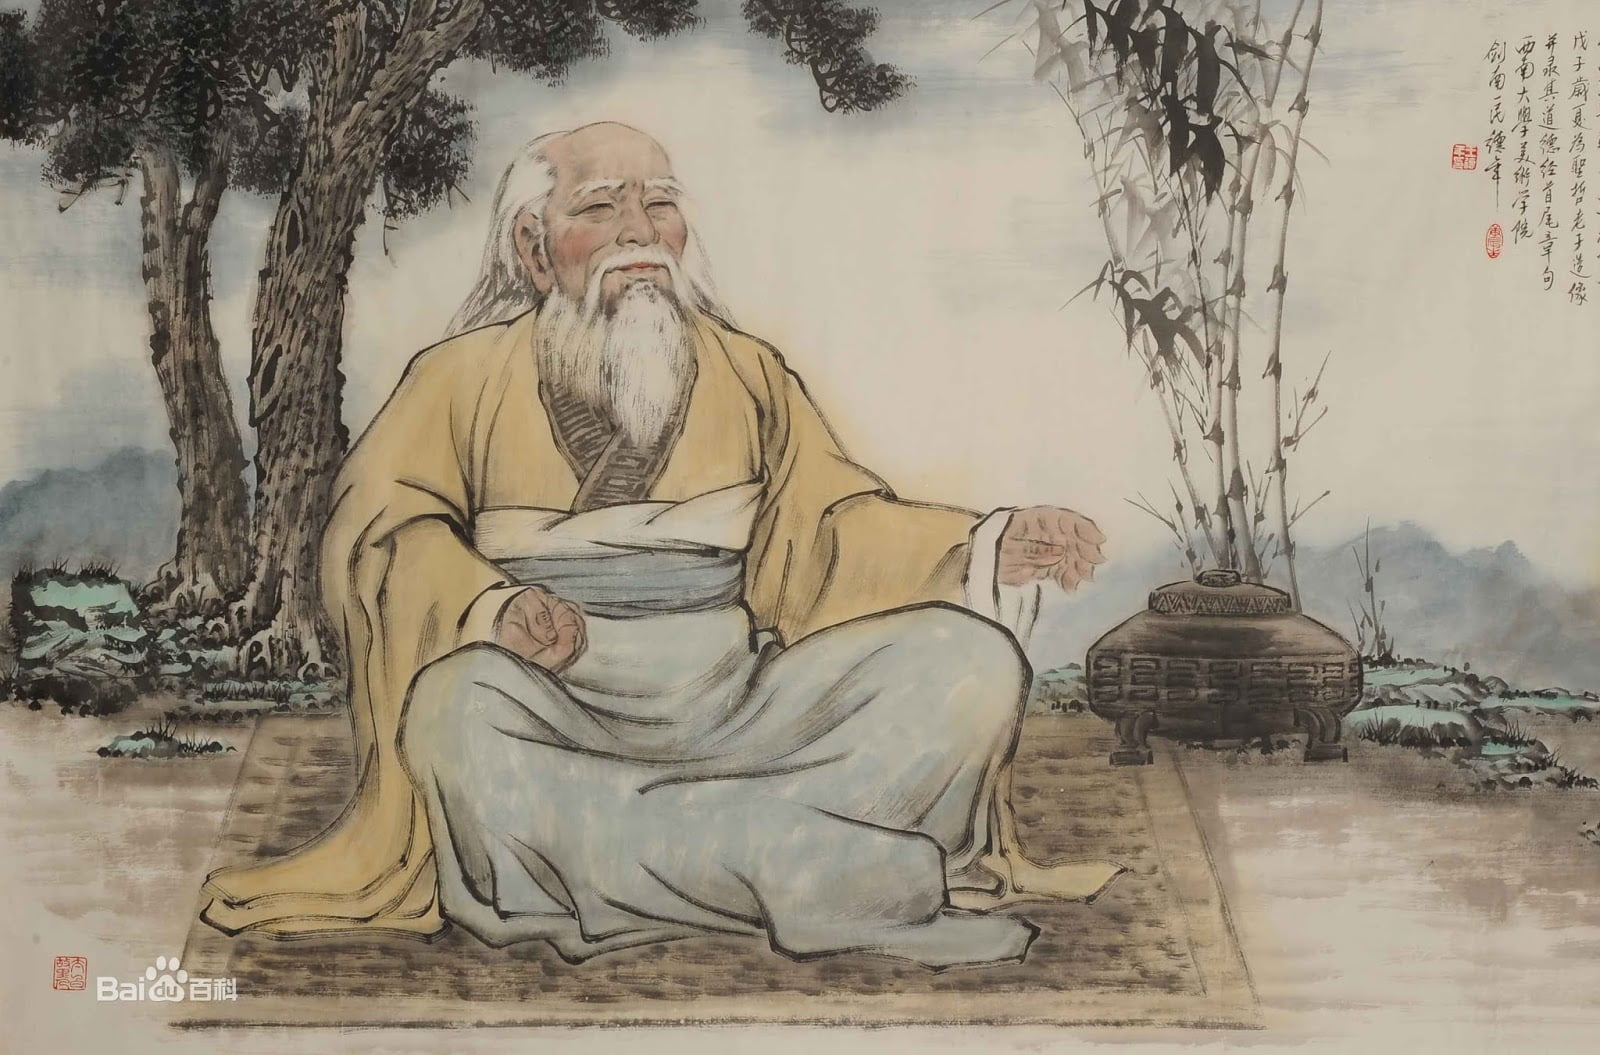 Цзюнь цзы. Китайский философ Лао-Цзы. Китайская философия Лао Цзы. Лао Цзы Конфуций Лао Цзы. Лао дзы Дао де дзы.